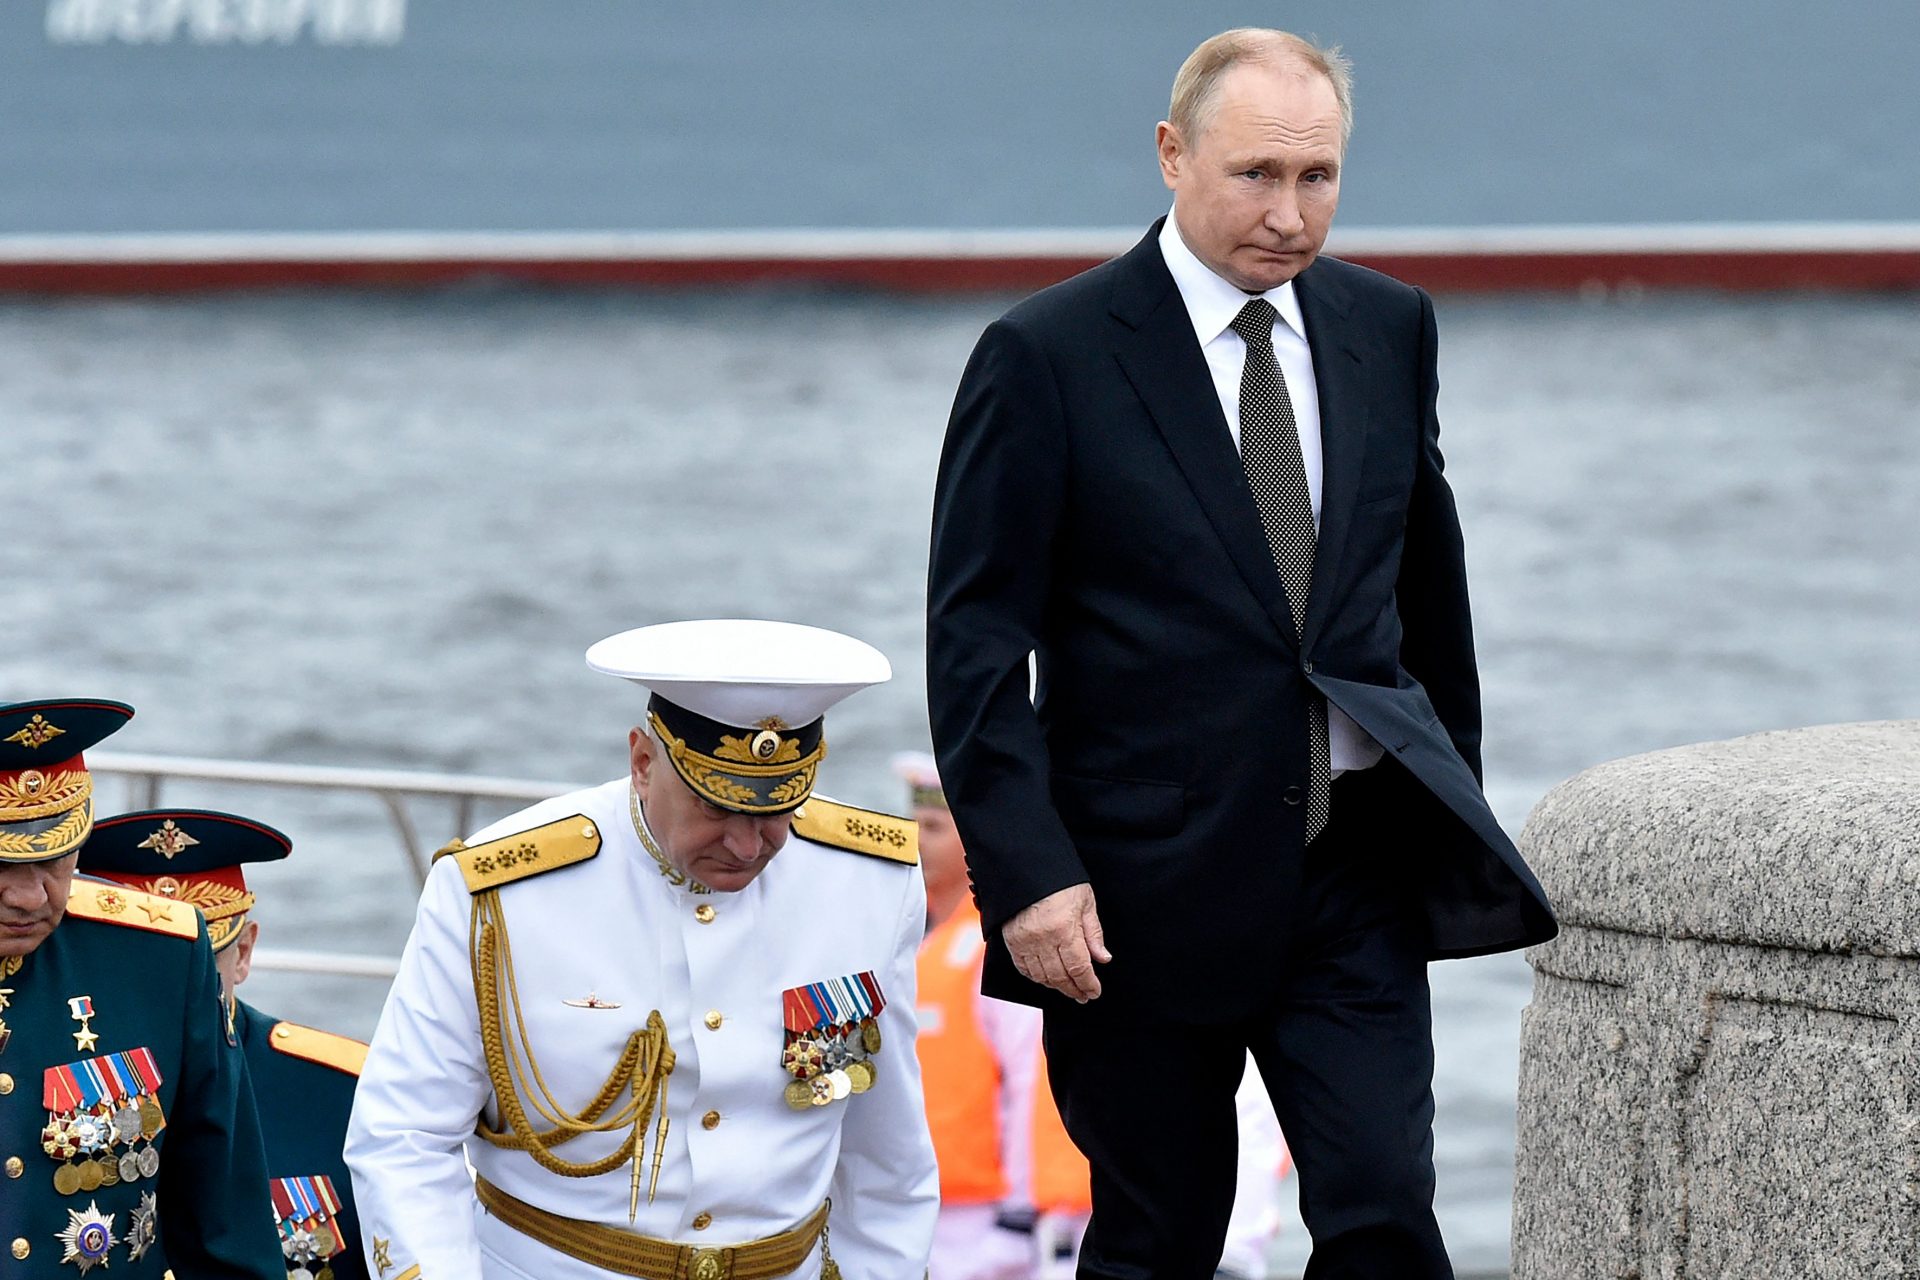 Strani movimenti di navi nel Mar Nero sollevano interrogativi sui timori della Russia